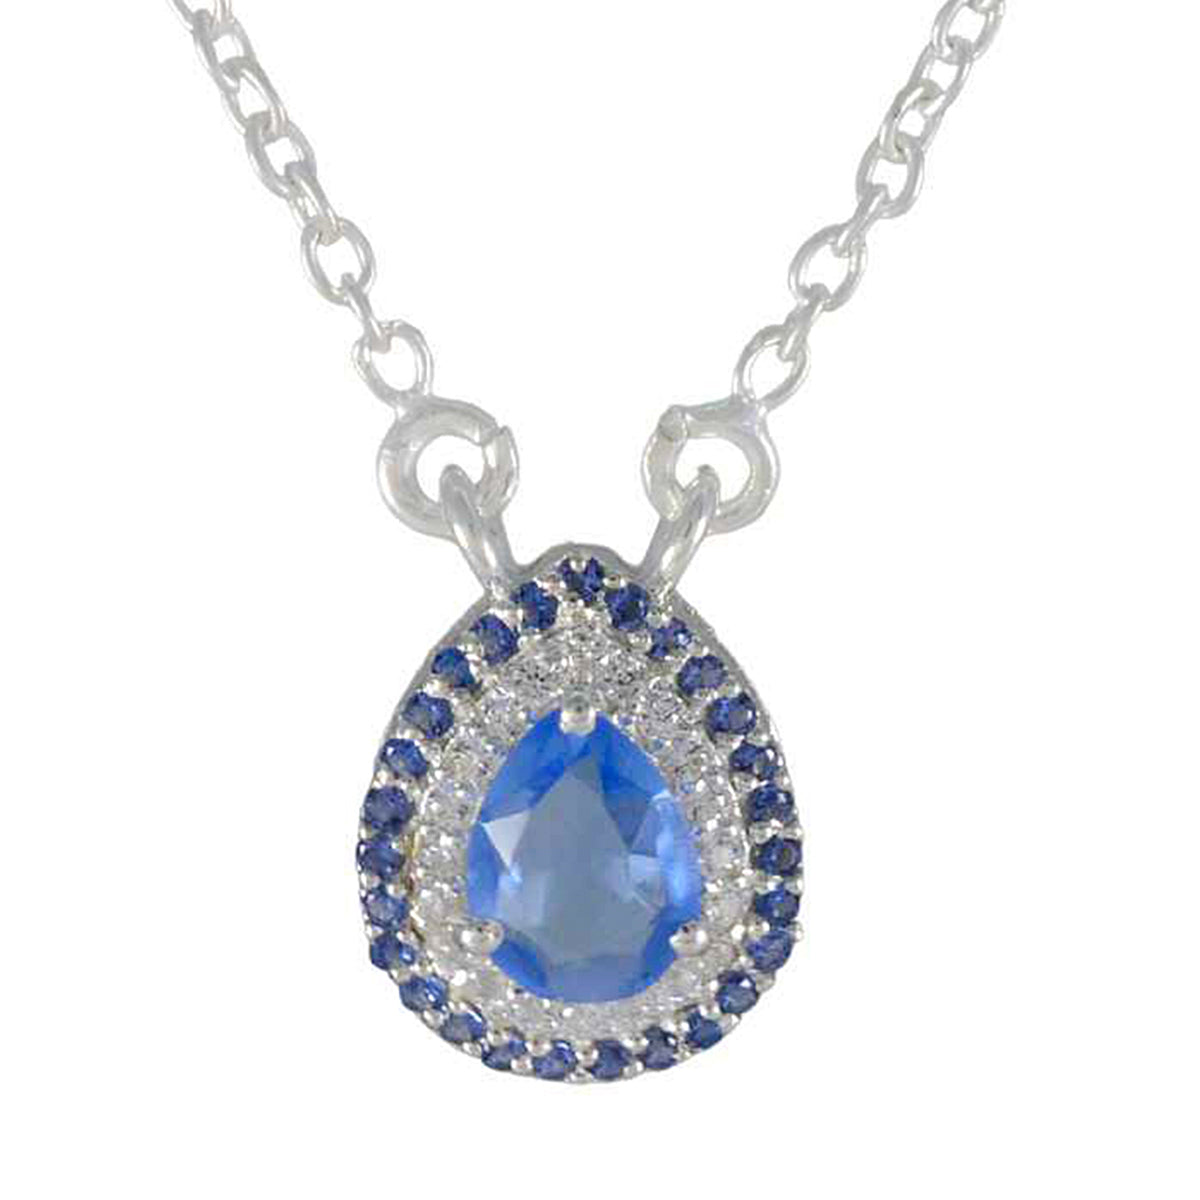 Riyo mooie edelsteen peer gefacetteerd blauw blauwe saffier Cz sterling zilveren hanger cadeau voor vriend